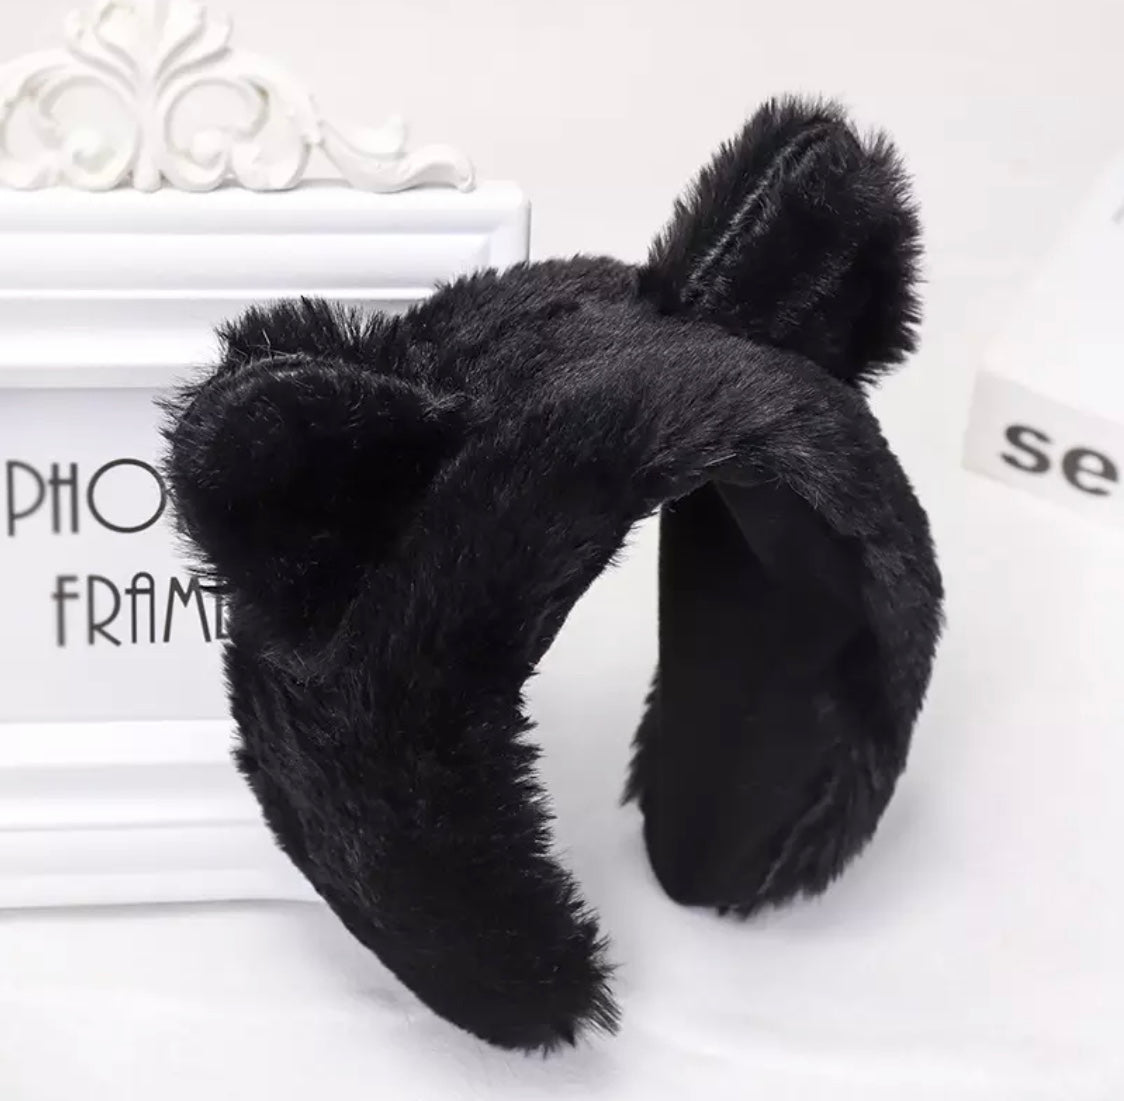 DDLGVERSE Fuzzy Bear Headband Black